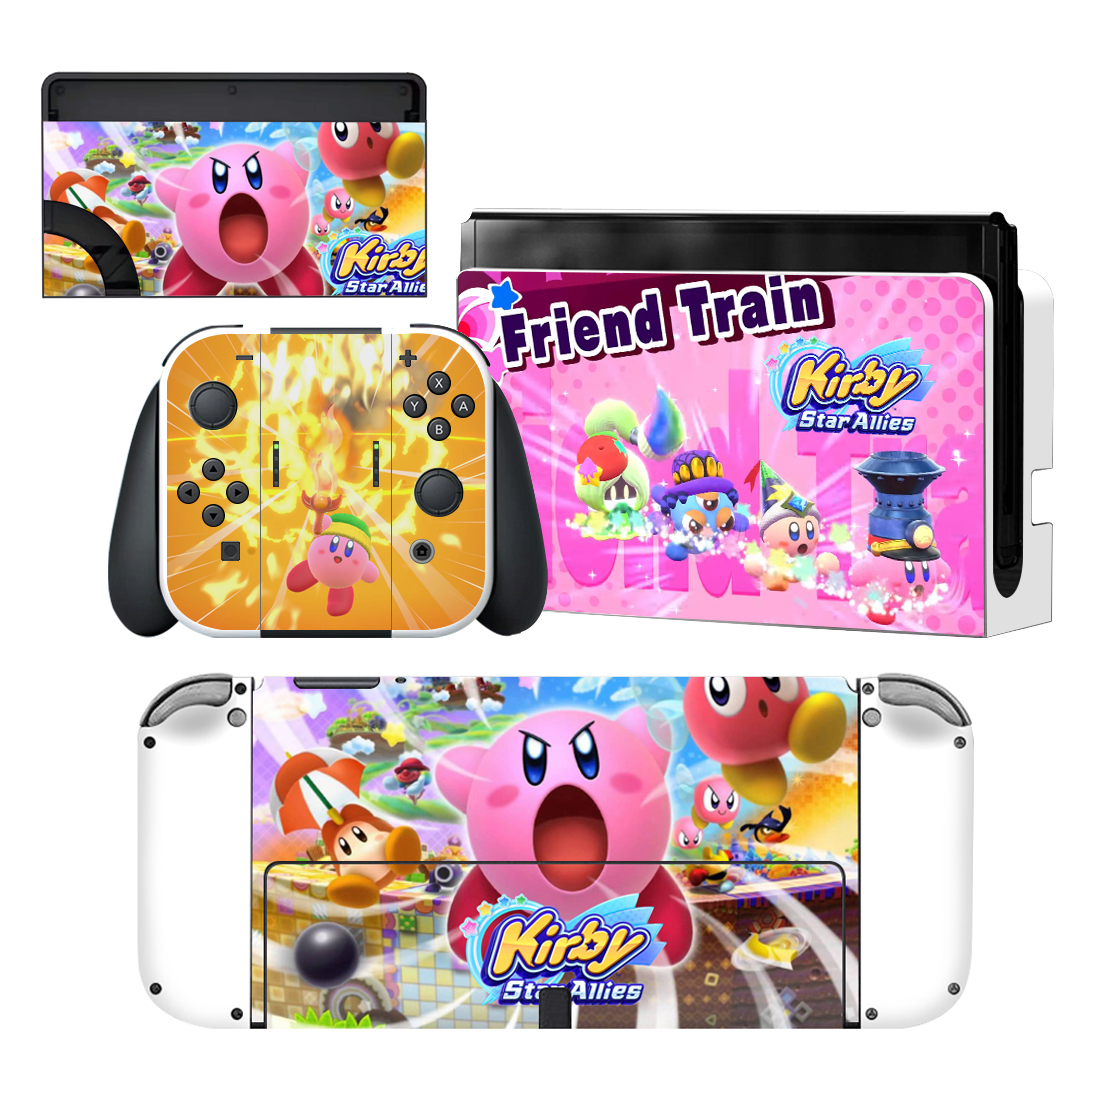 Kirby Star Allies Nintendo Switch OLED Skin Sticker Decal